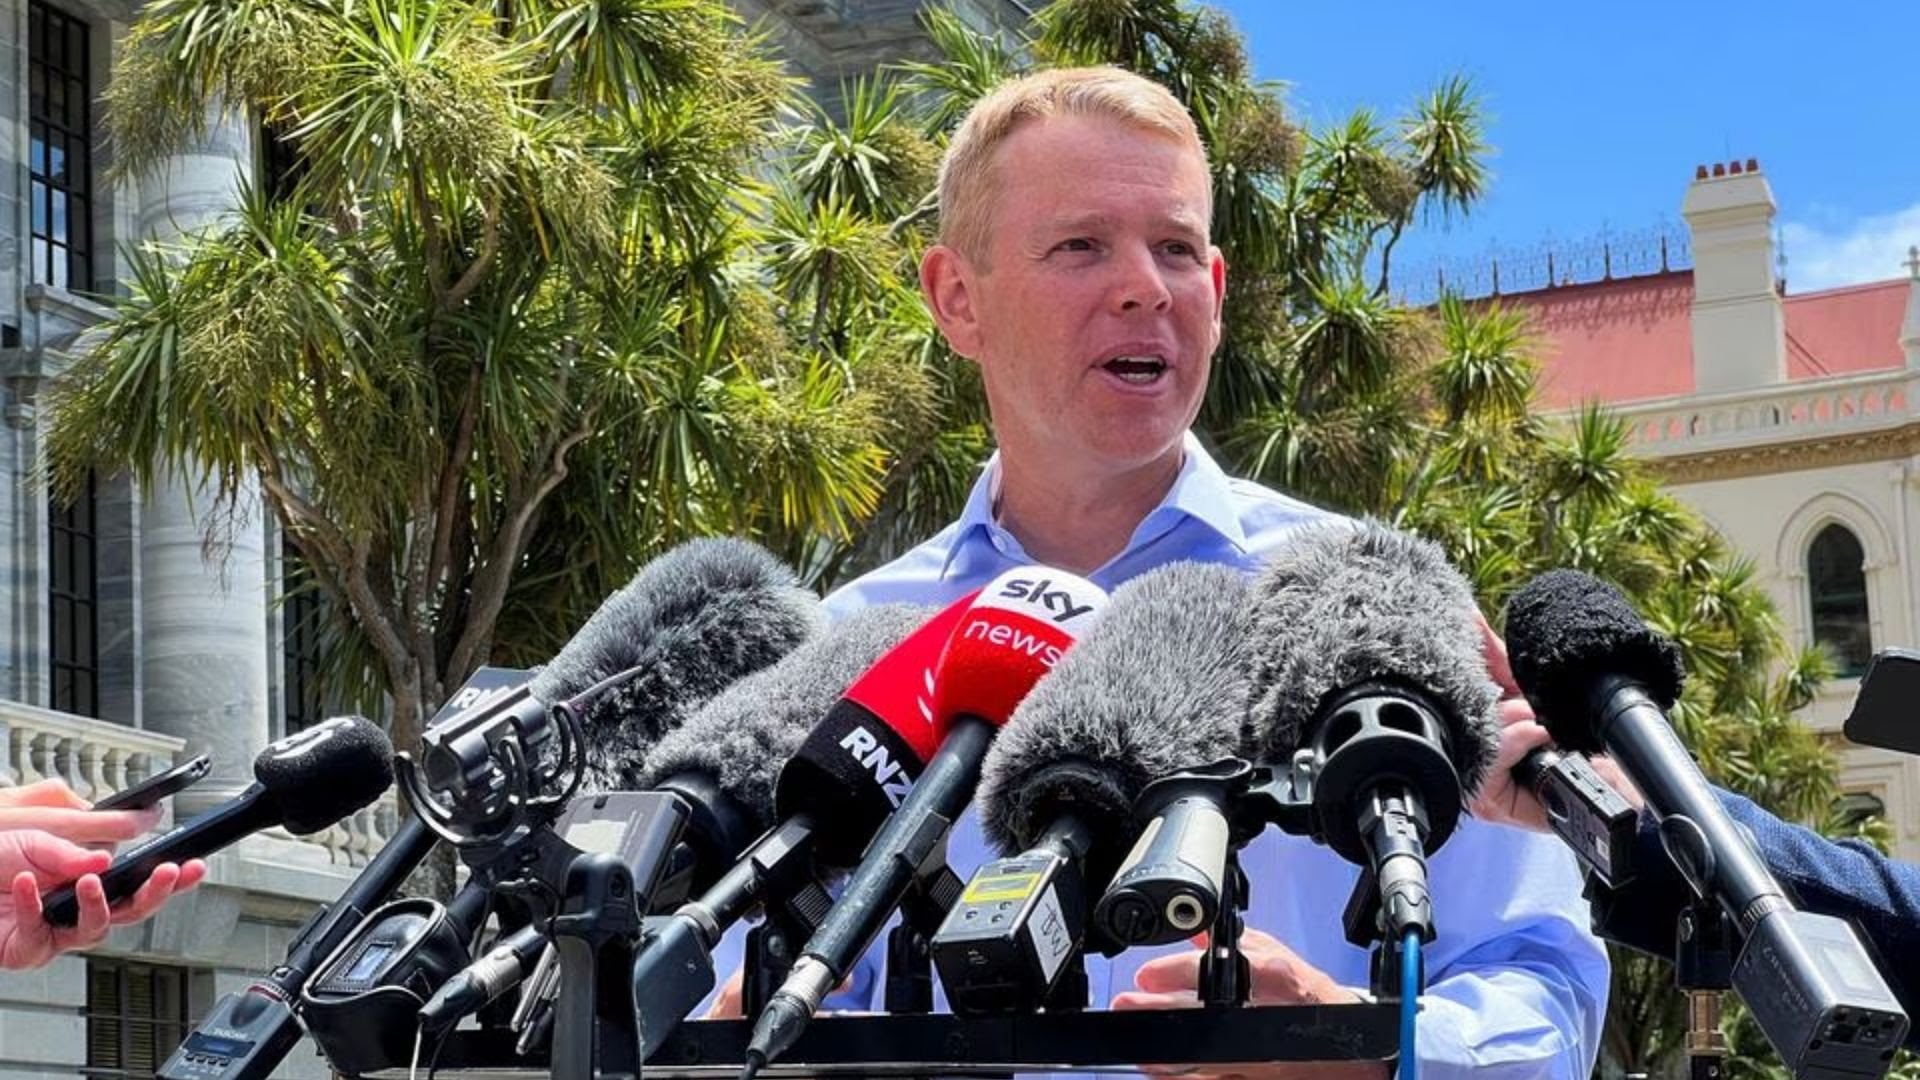 Selandia Baru Pilih Hipkins 'Chippy' untuk Menjadi Perdana Menteri Gantikan Ardern